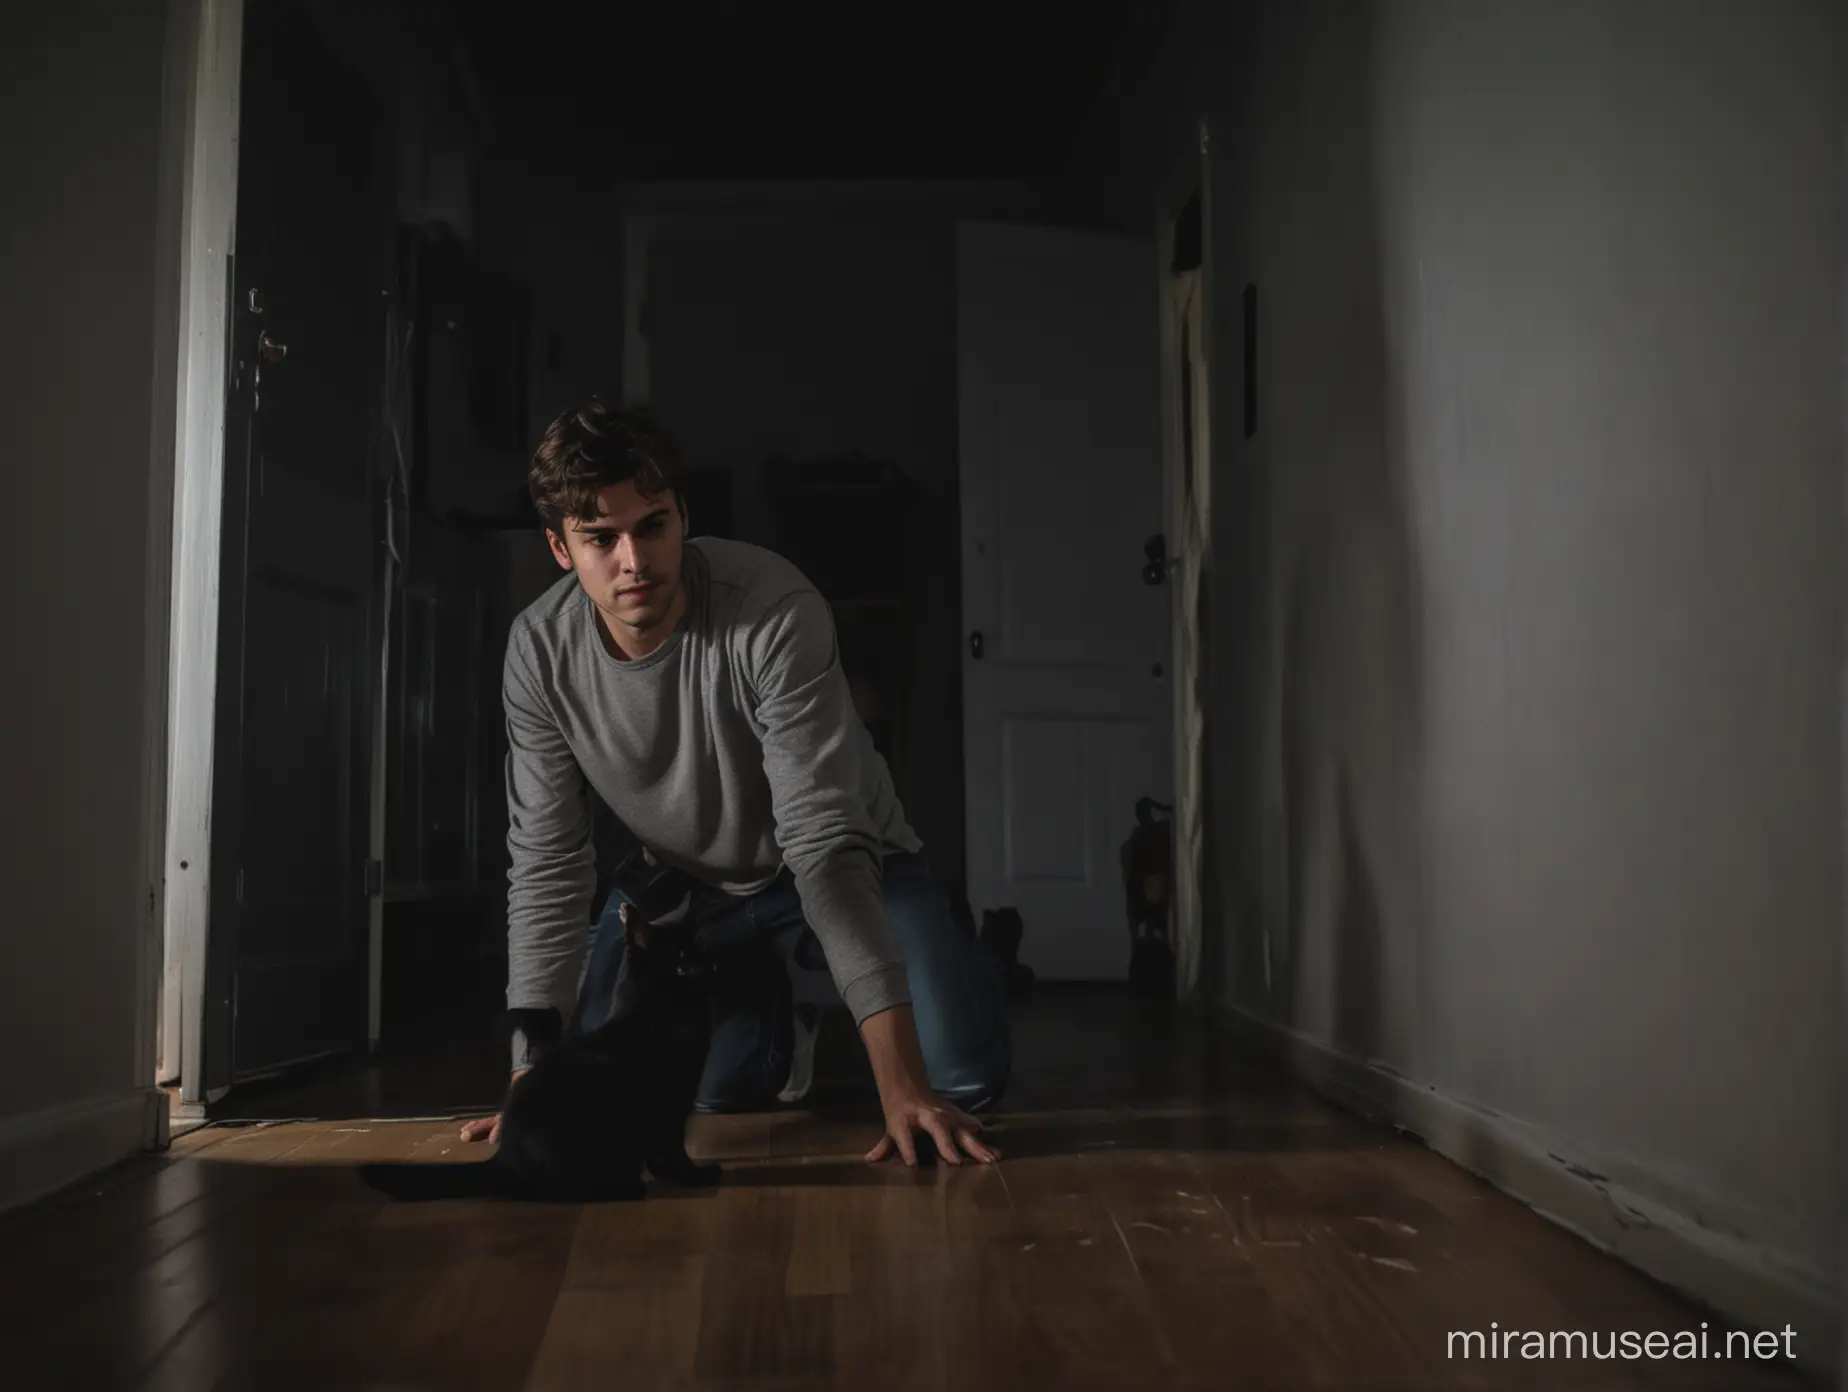 un hombre joven adulto en la sala de su casa oscura, jugando con un gato color, negro en la noche.